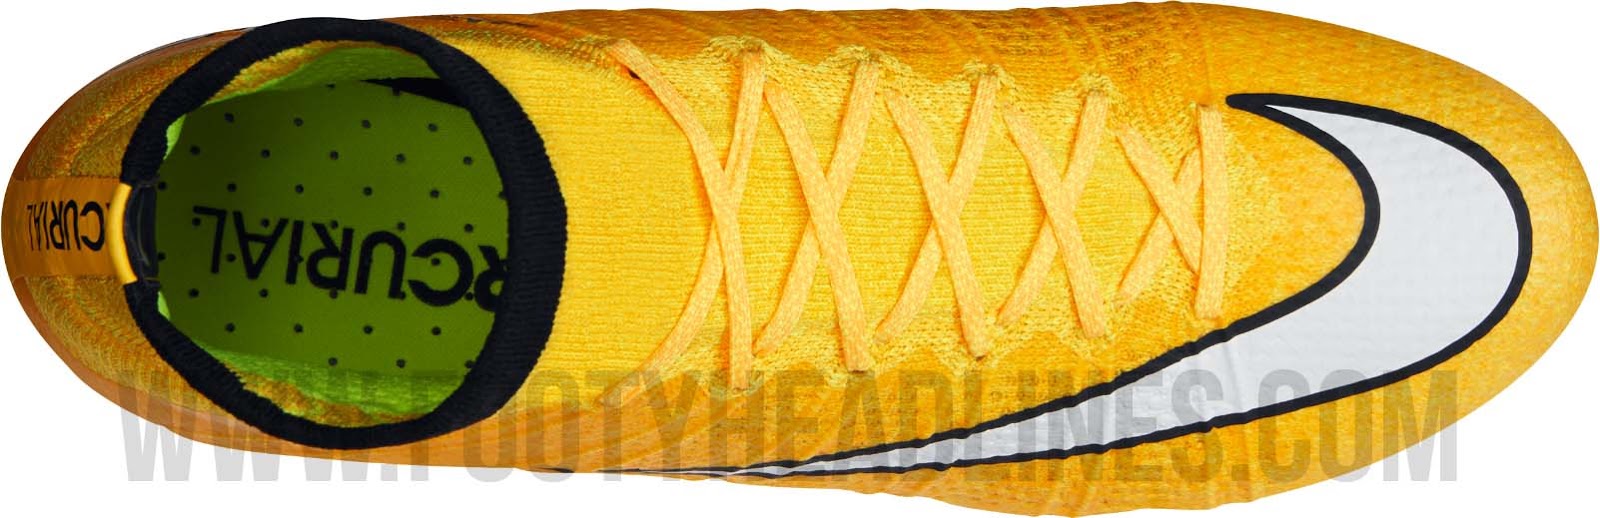 Orange Nike Superfly 14-15 Released - Footy Headlines